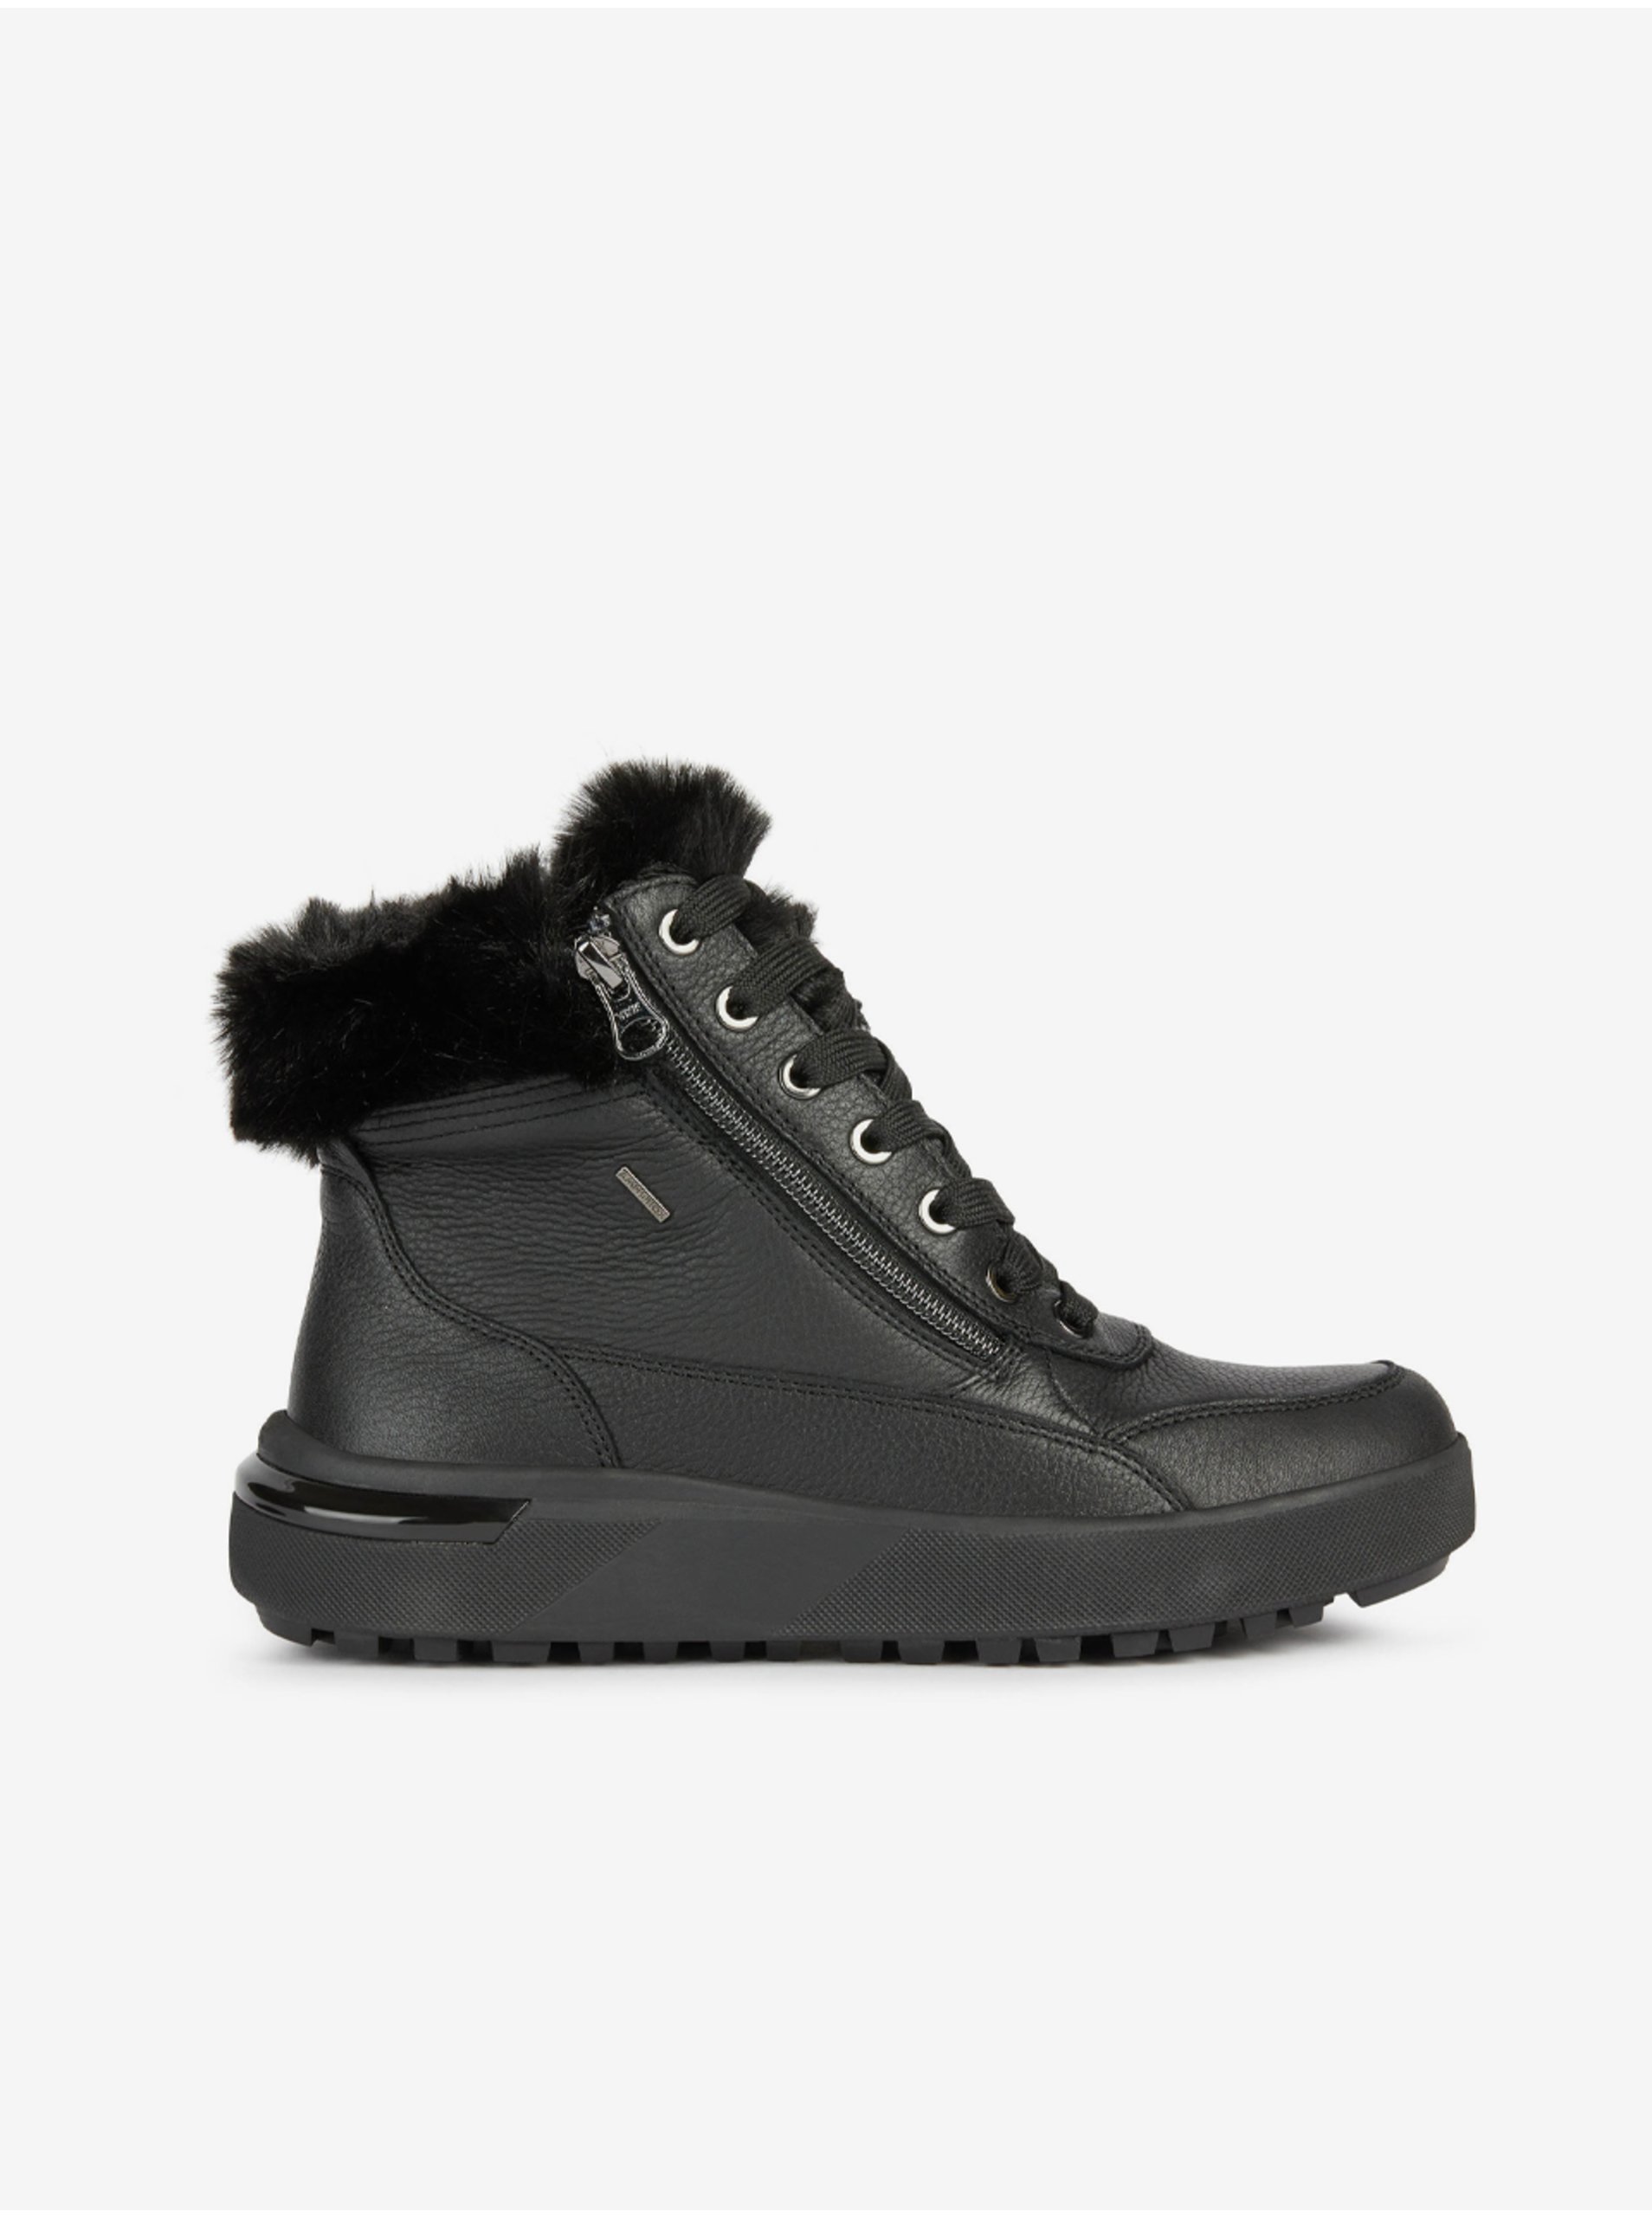 E-shop Černé dámské kotníkové kožené boty s umělým kožíškem Geox Dalyla